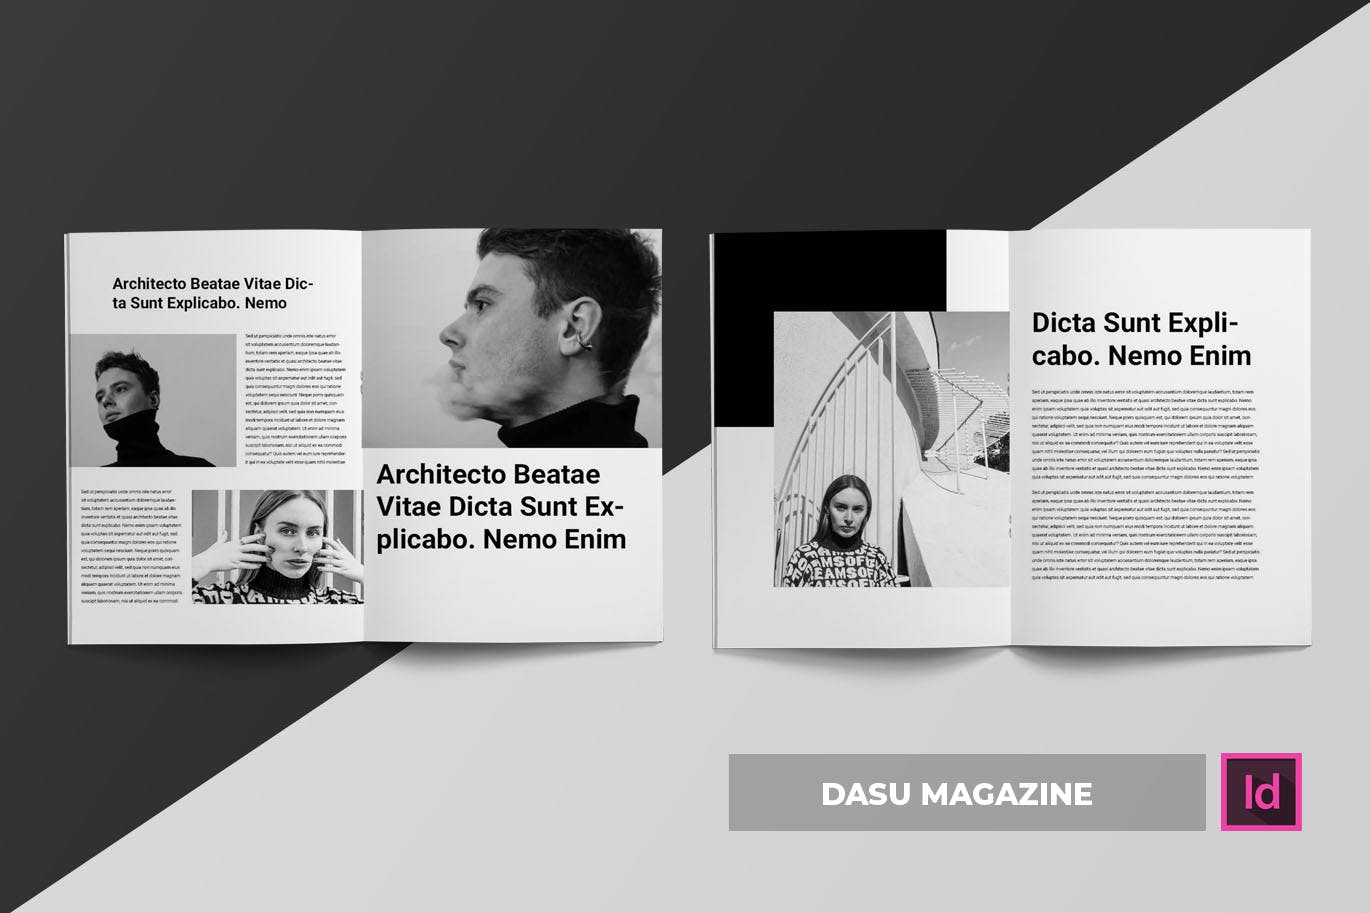 摄影艺术/时装设计主题16设计网精选杂志排版设计模板 Dasu | Magazine Template插图(2)